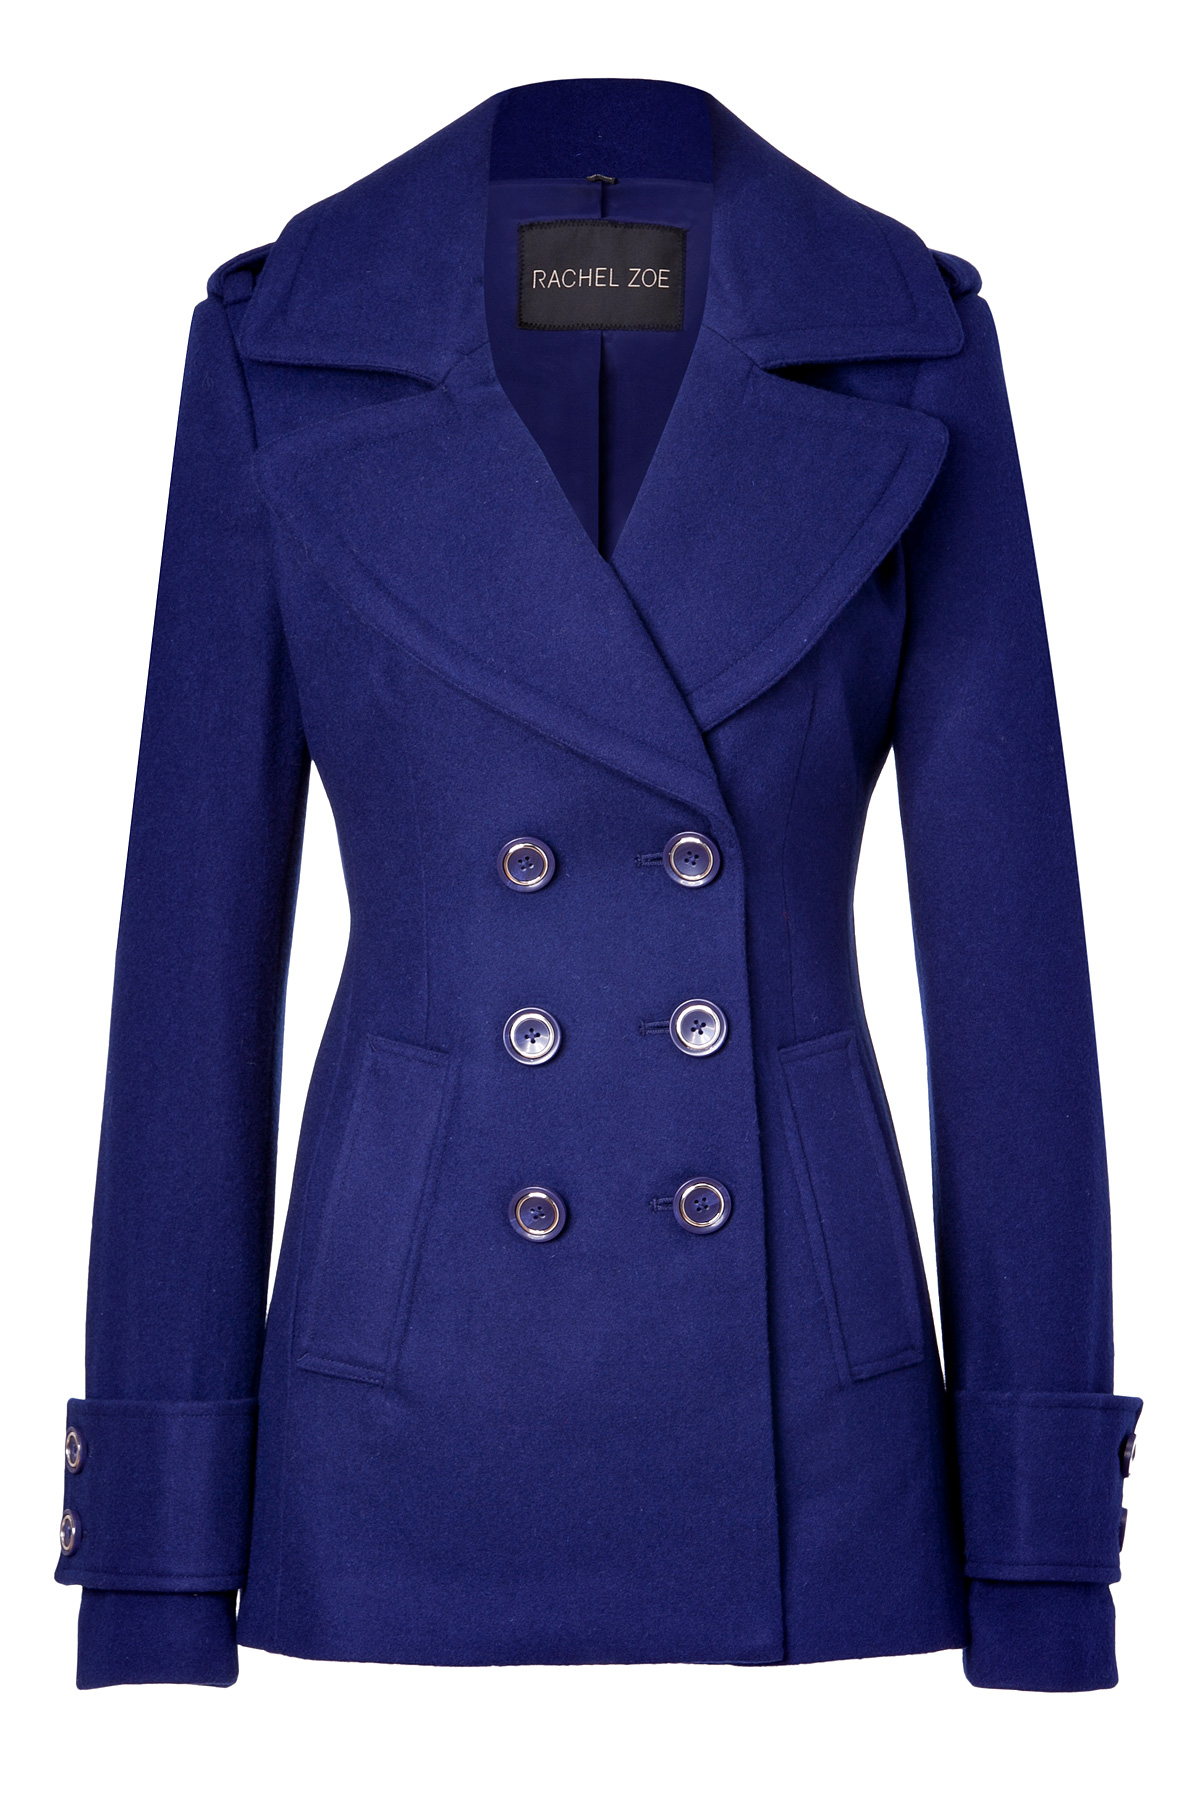 Rachel Zoe Royal Blue Woolblend Fay Pea Coat in Blue | Lyst